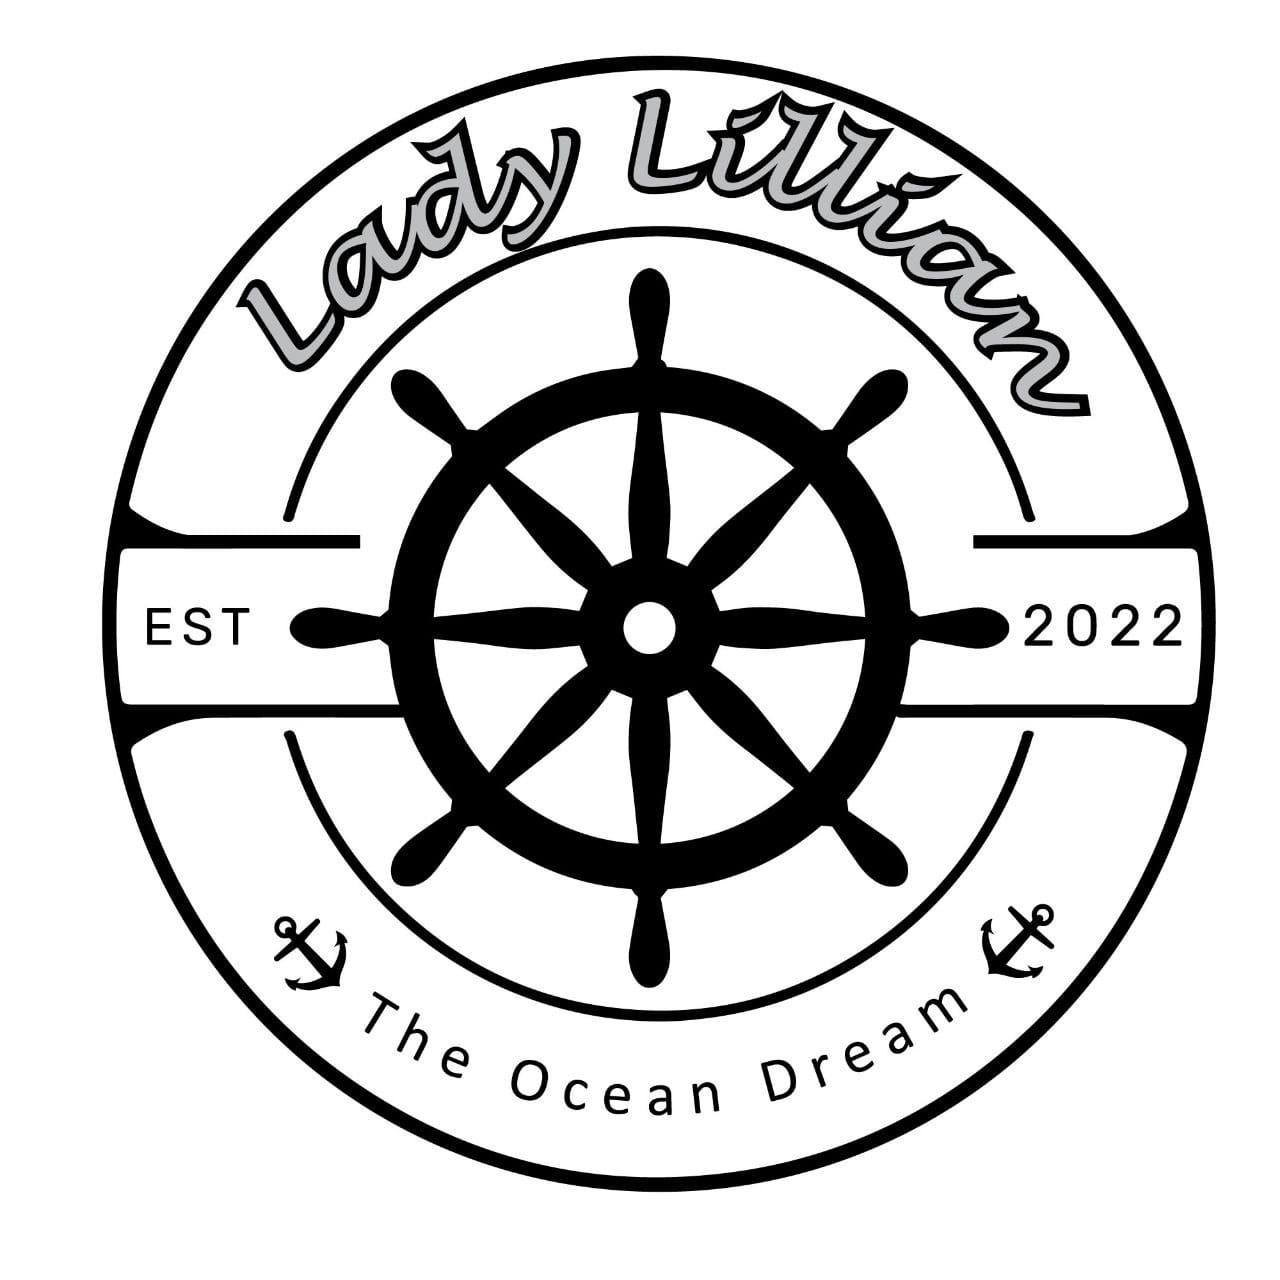 Lady Lillian Cruise Yacht